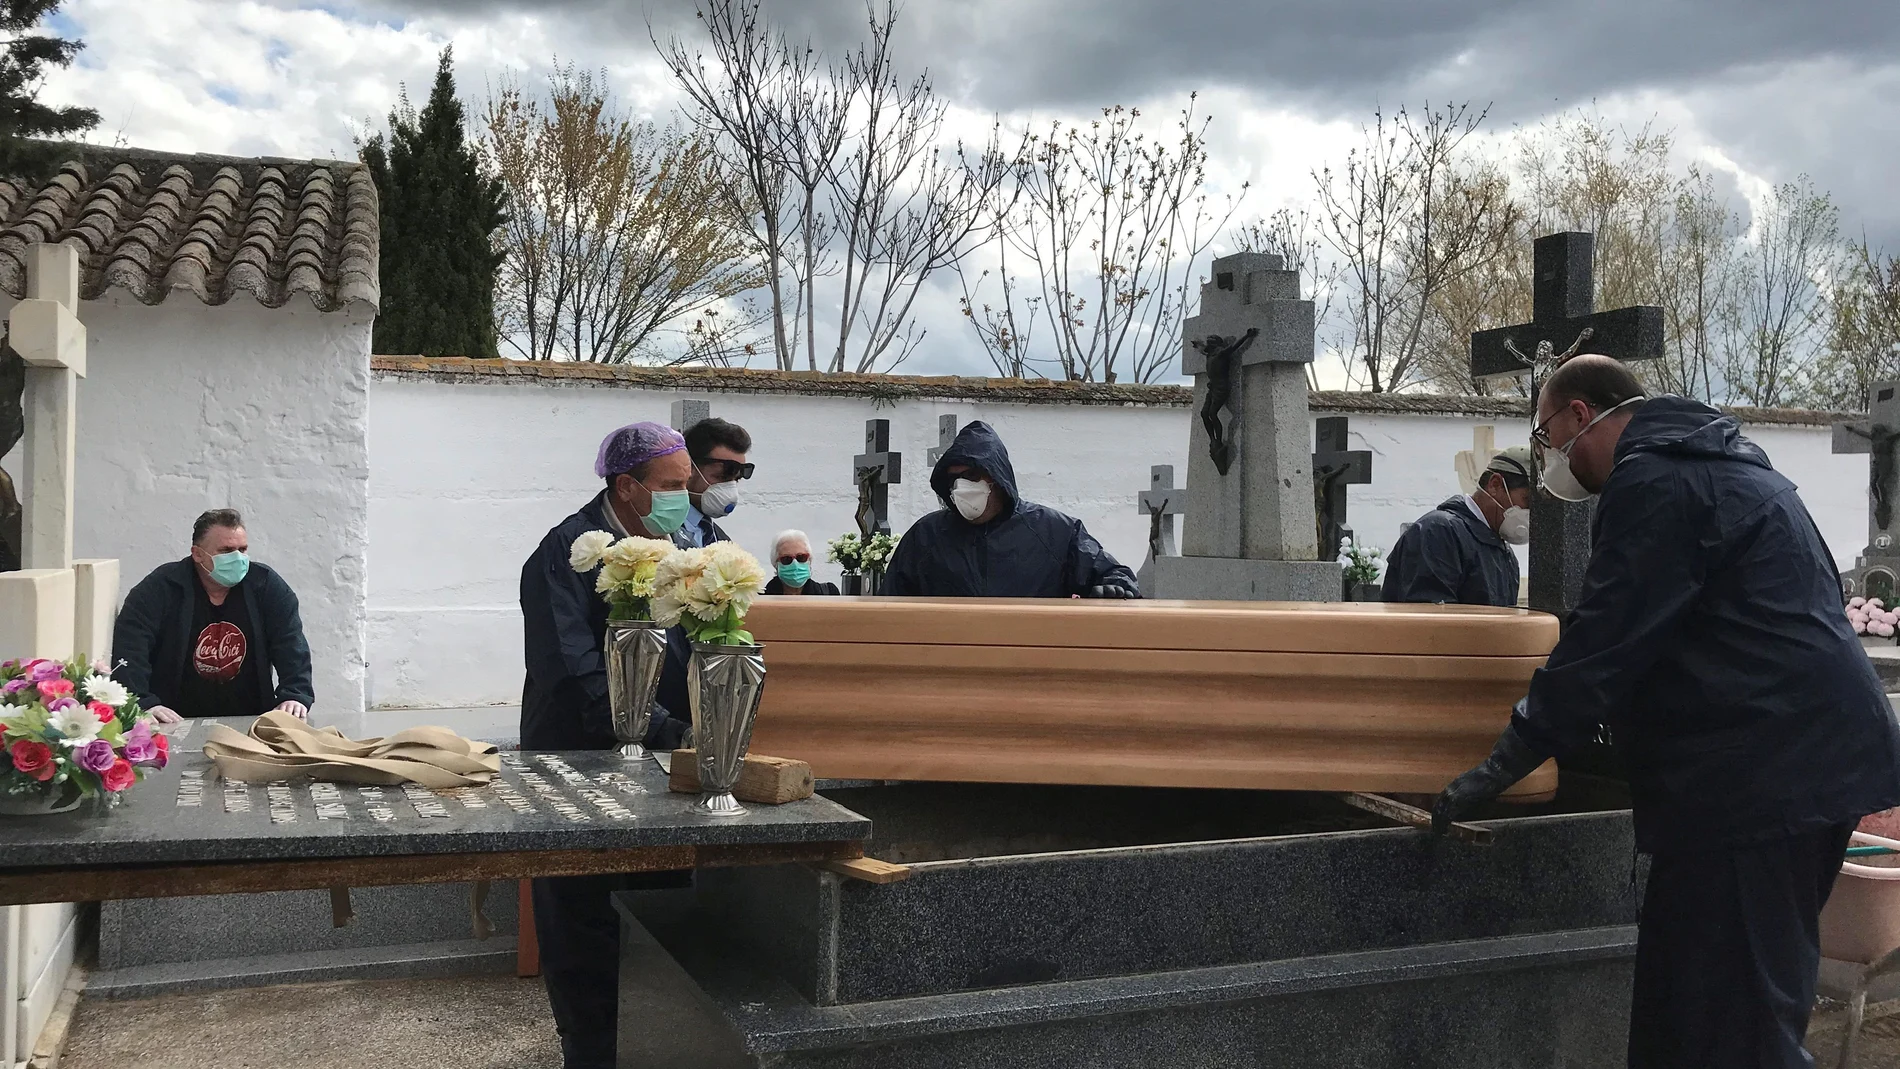 Operarios proceden a enterrar un féretro en el cementerio de Aldea del Rey, Ciudad Real